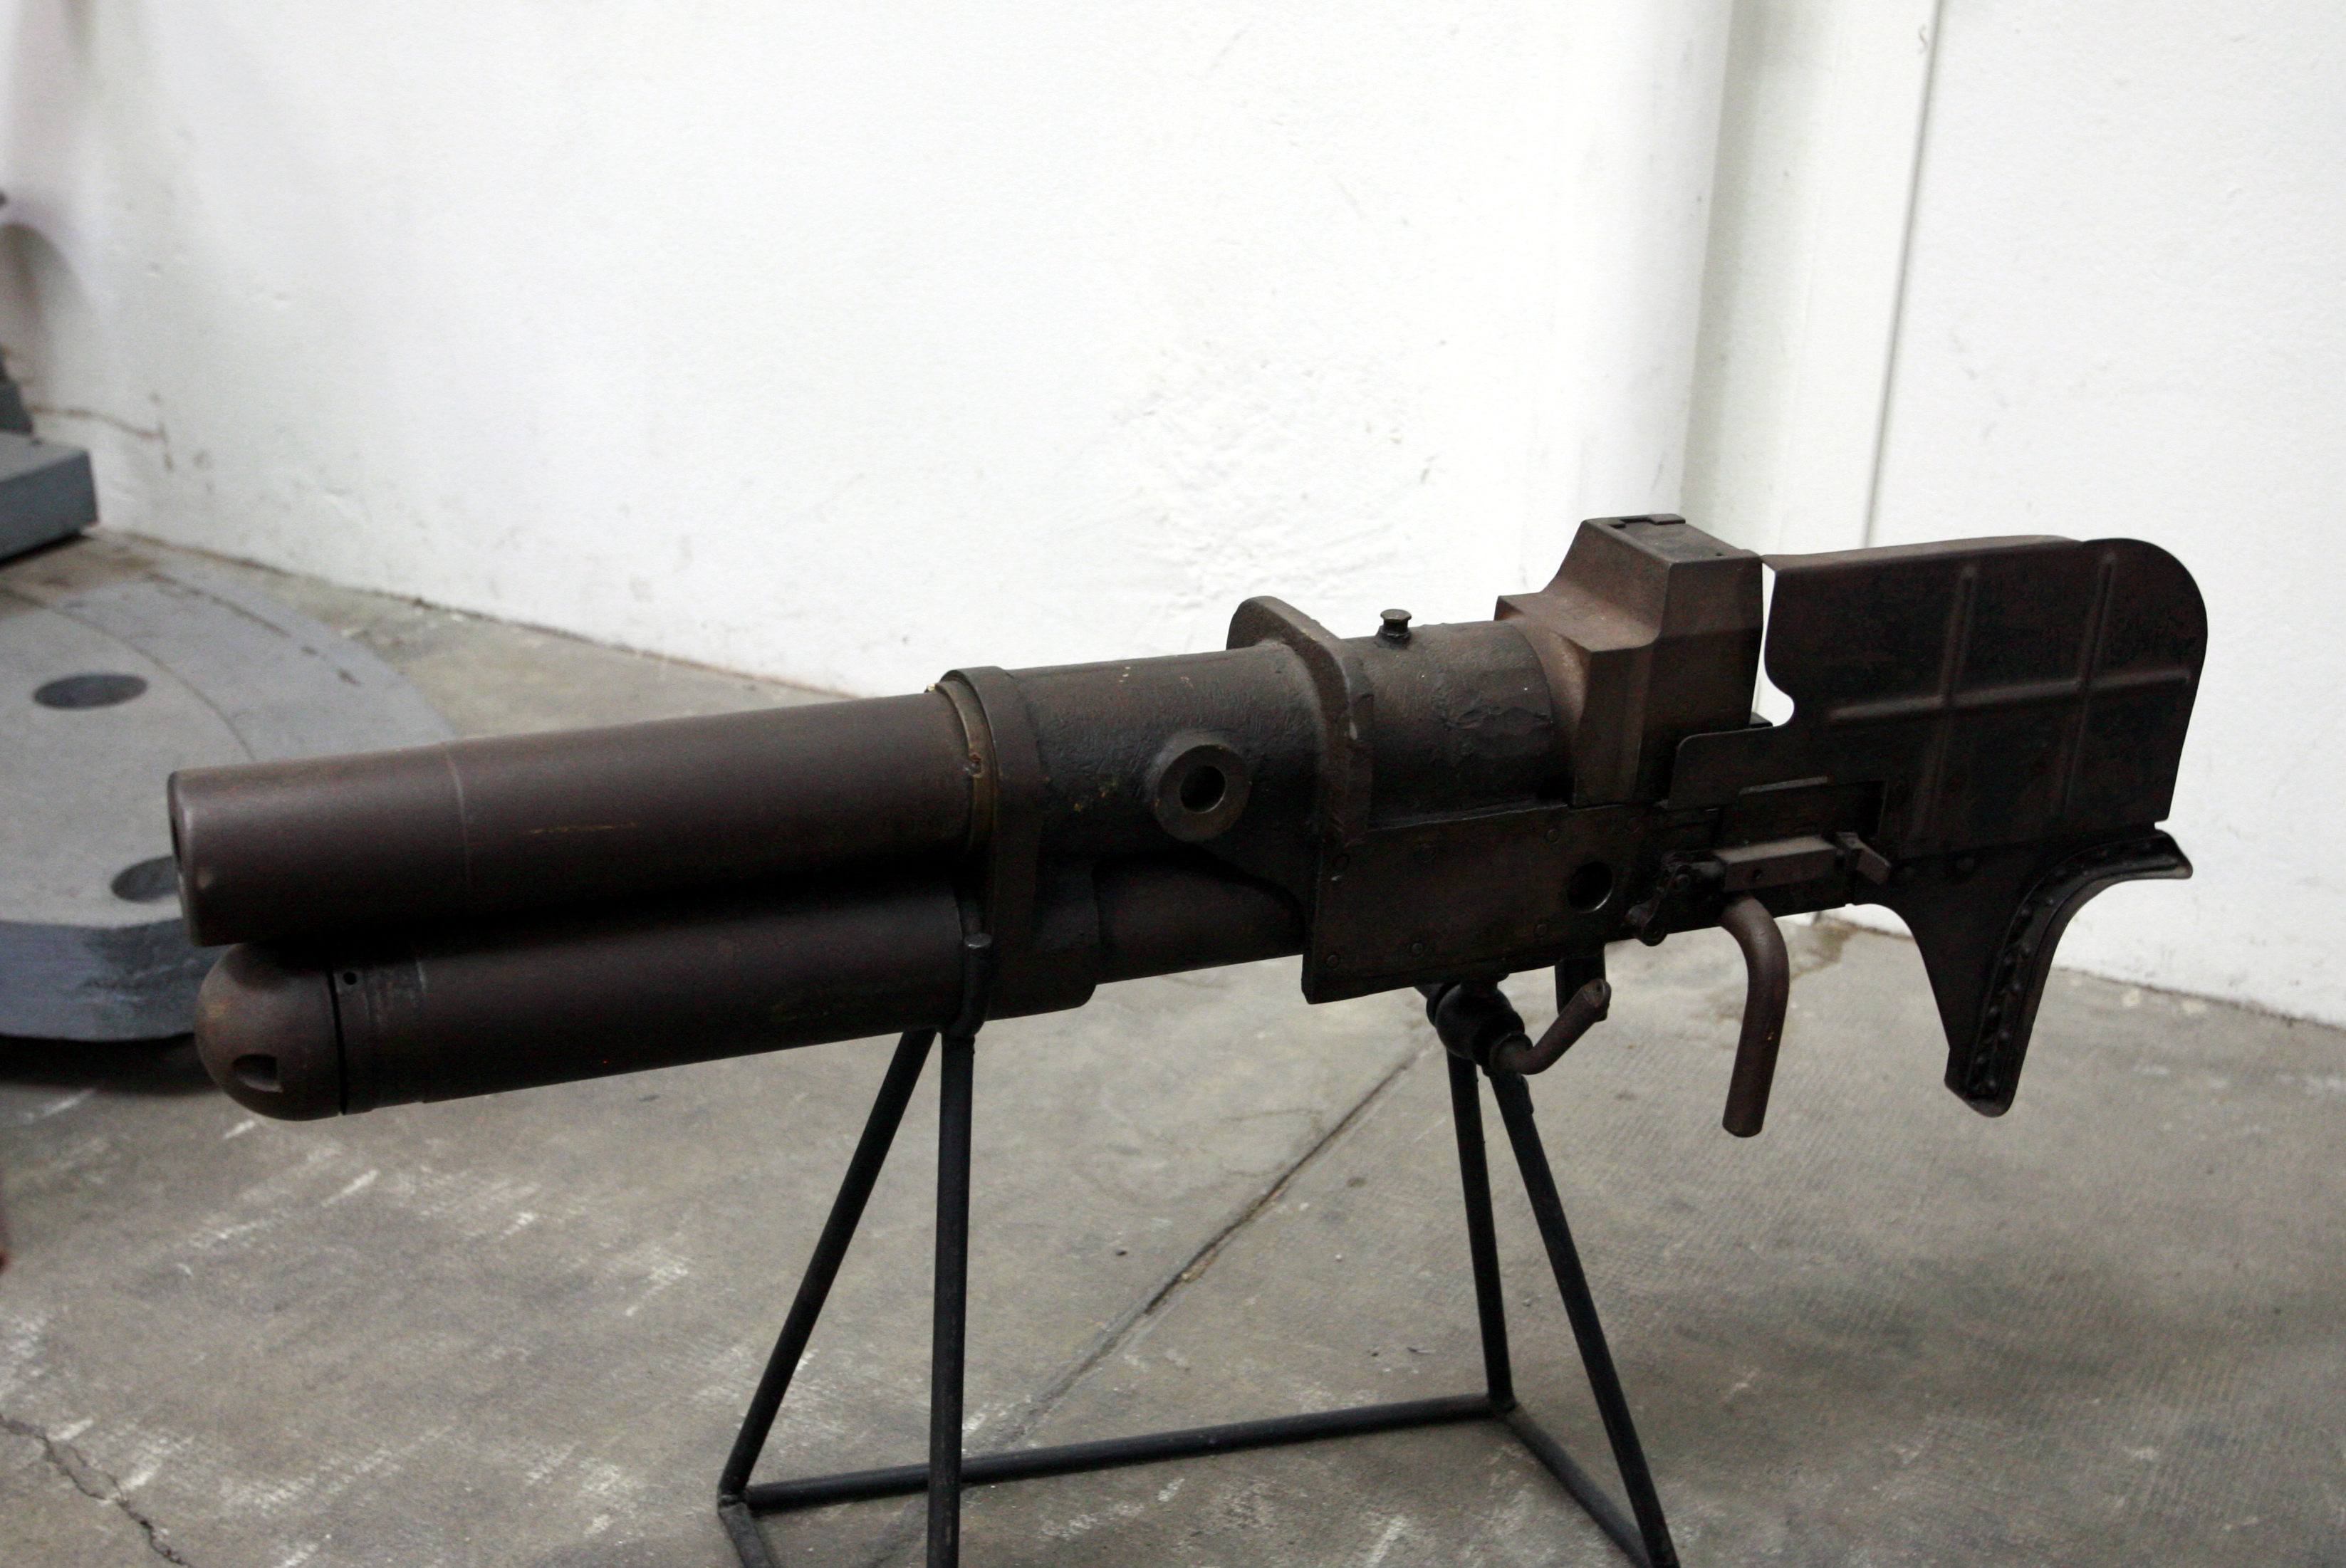 Canon 37 SA 18, Ce canon de 37 mm équipait les chars R35 et…